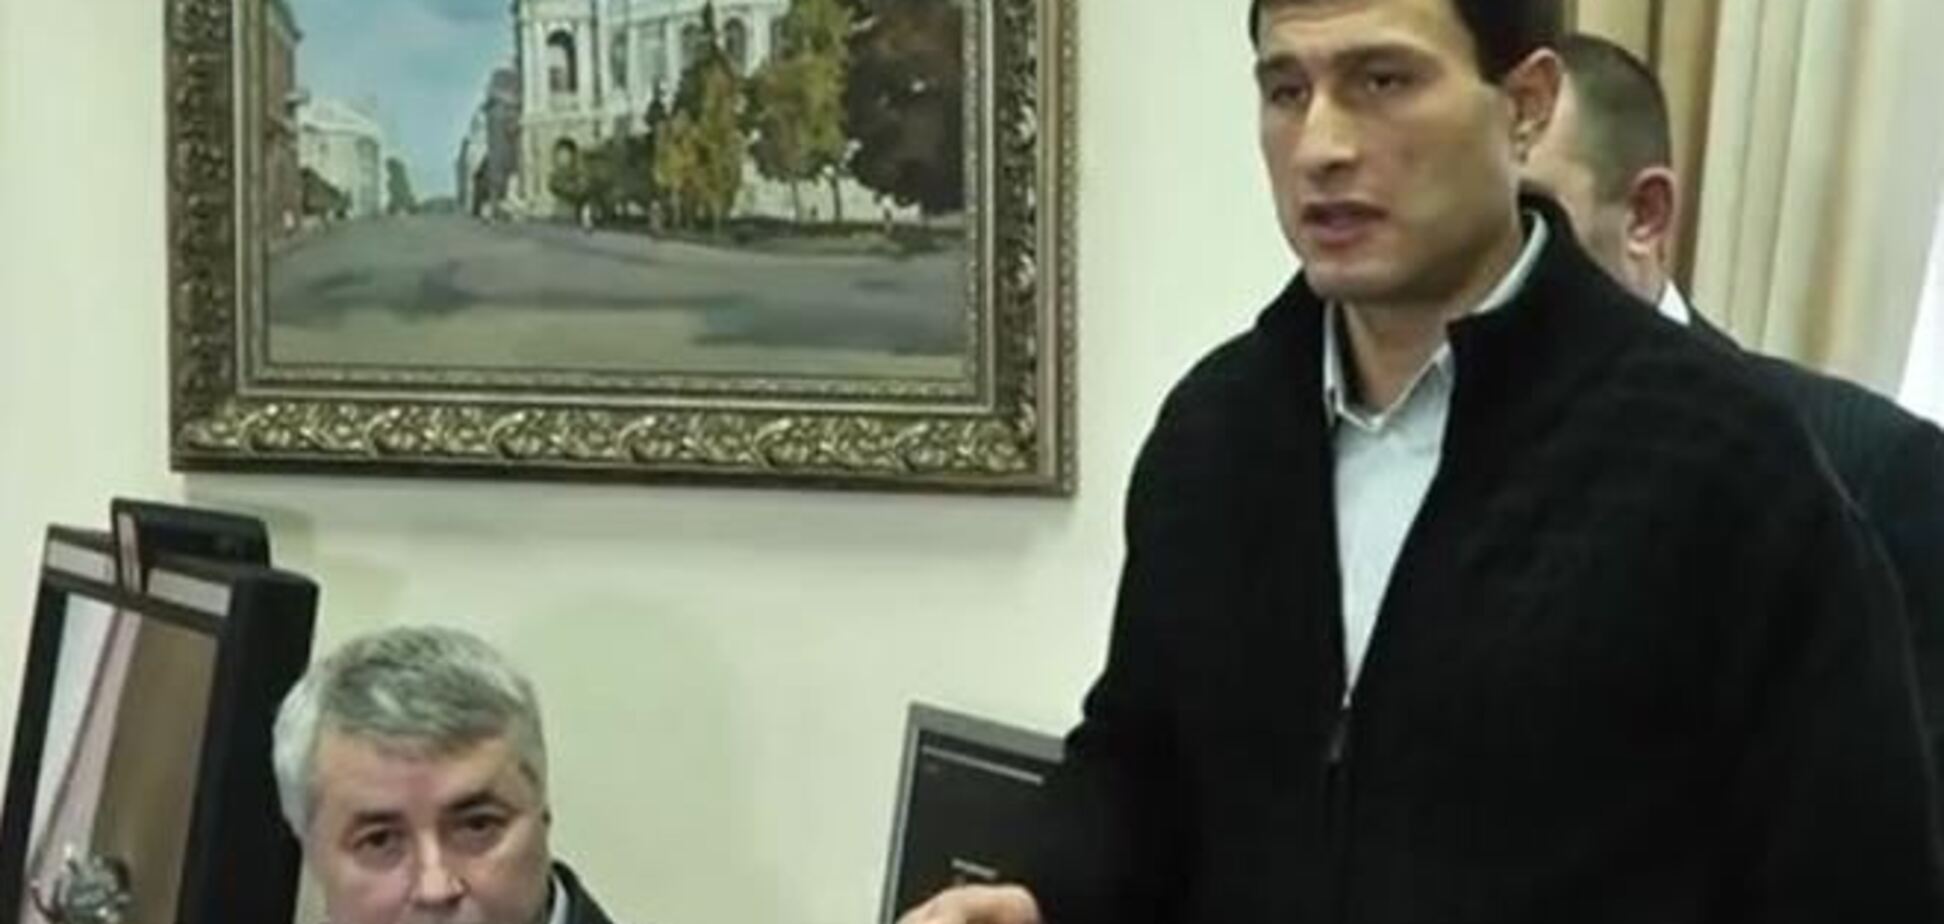 Сторонники Маркова просили губернатора 'посодействовать' в освобождении экс-нардепа